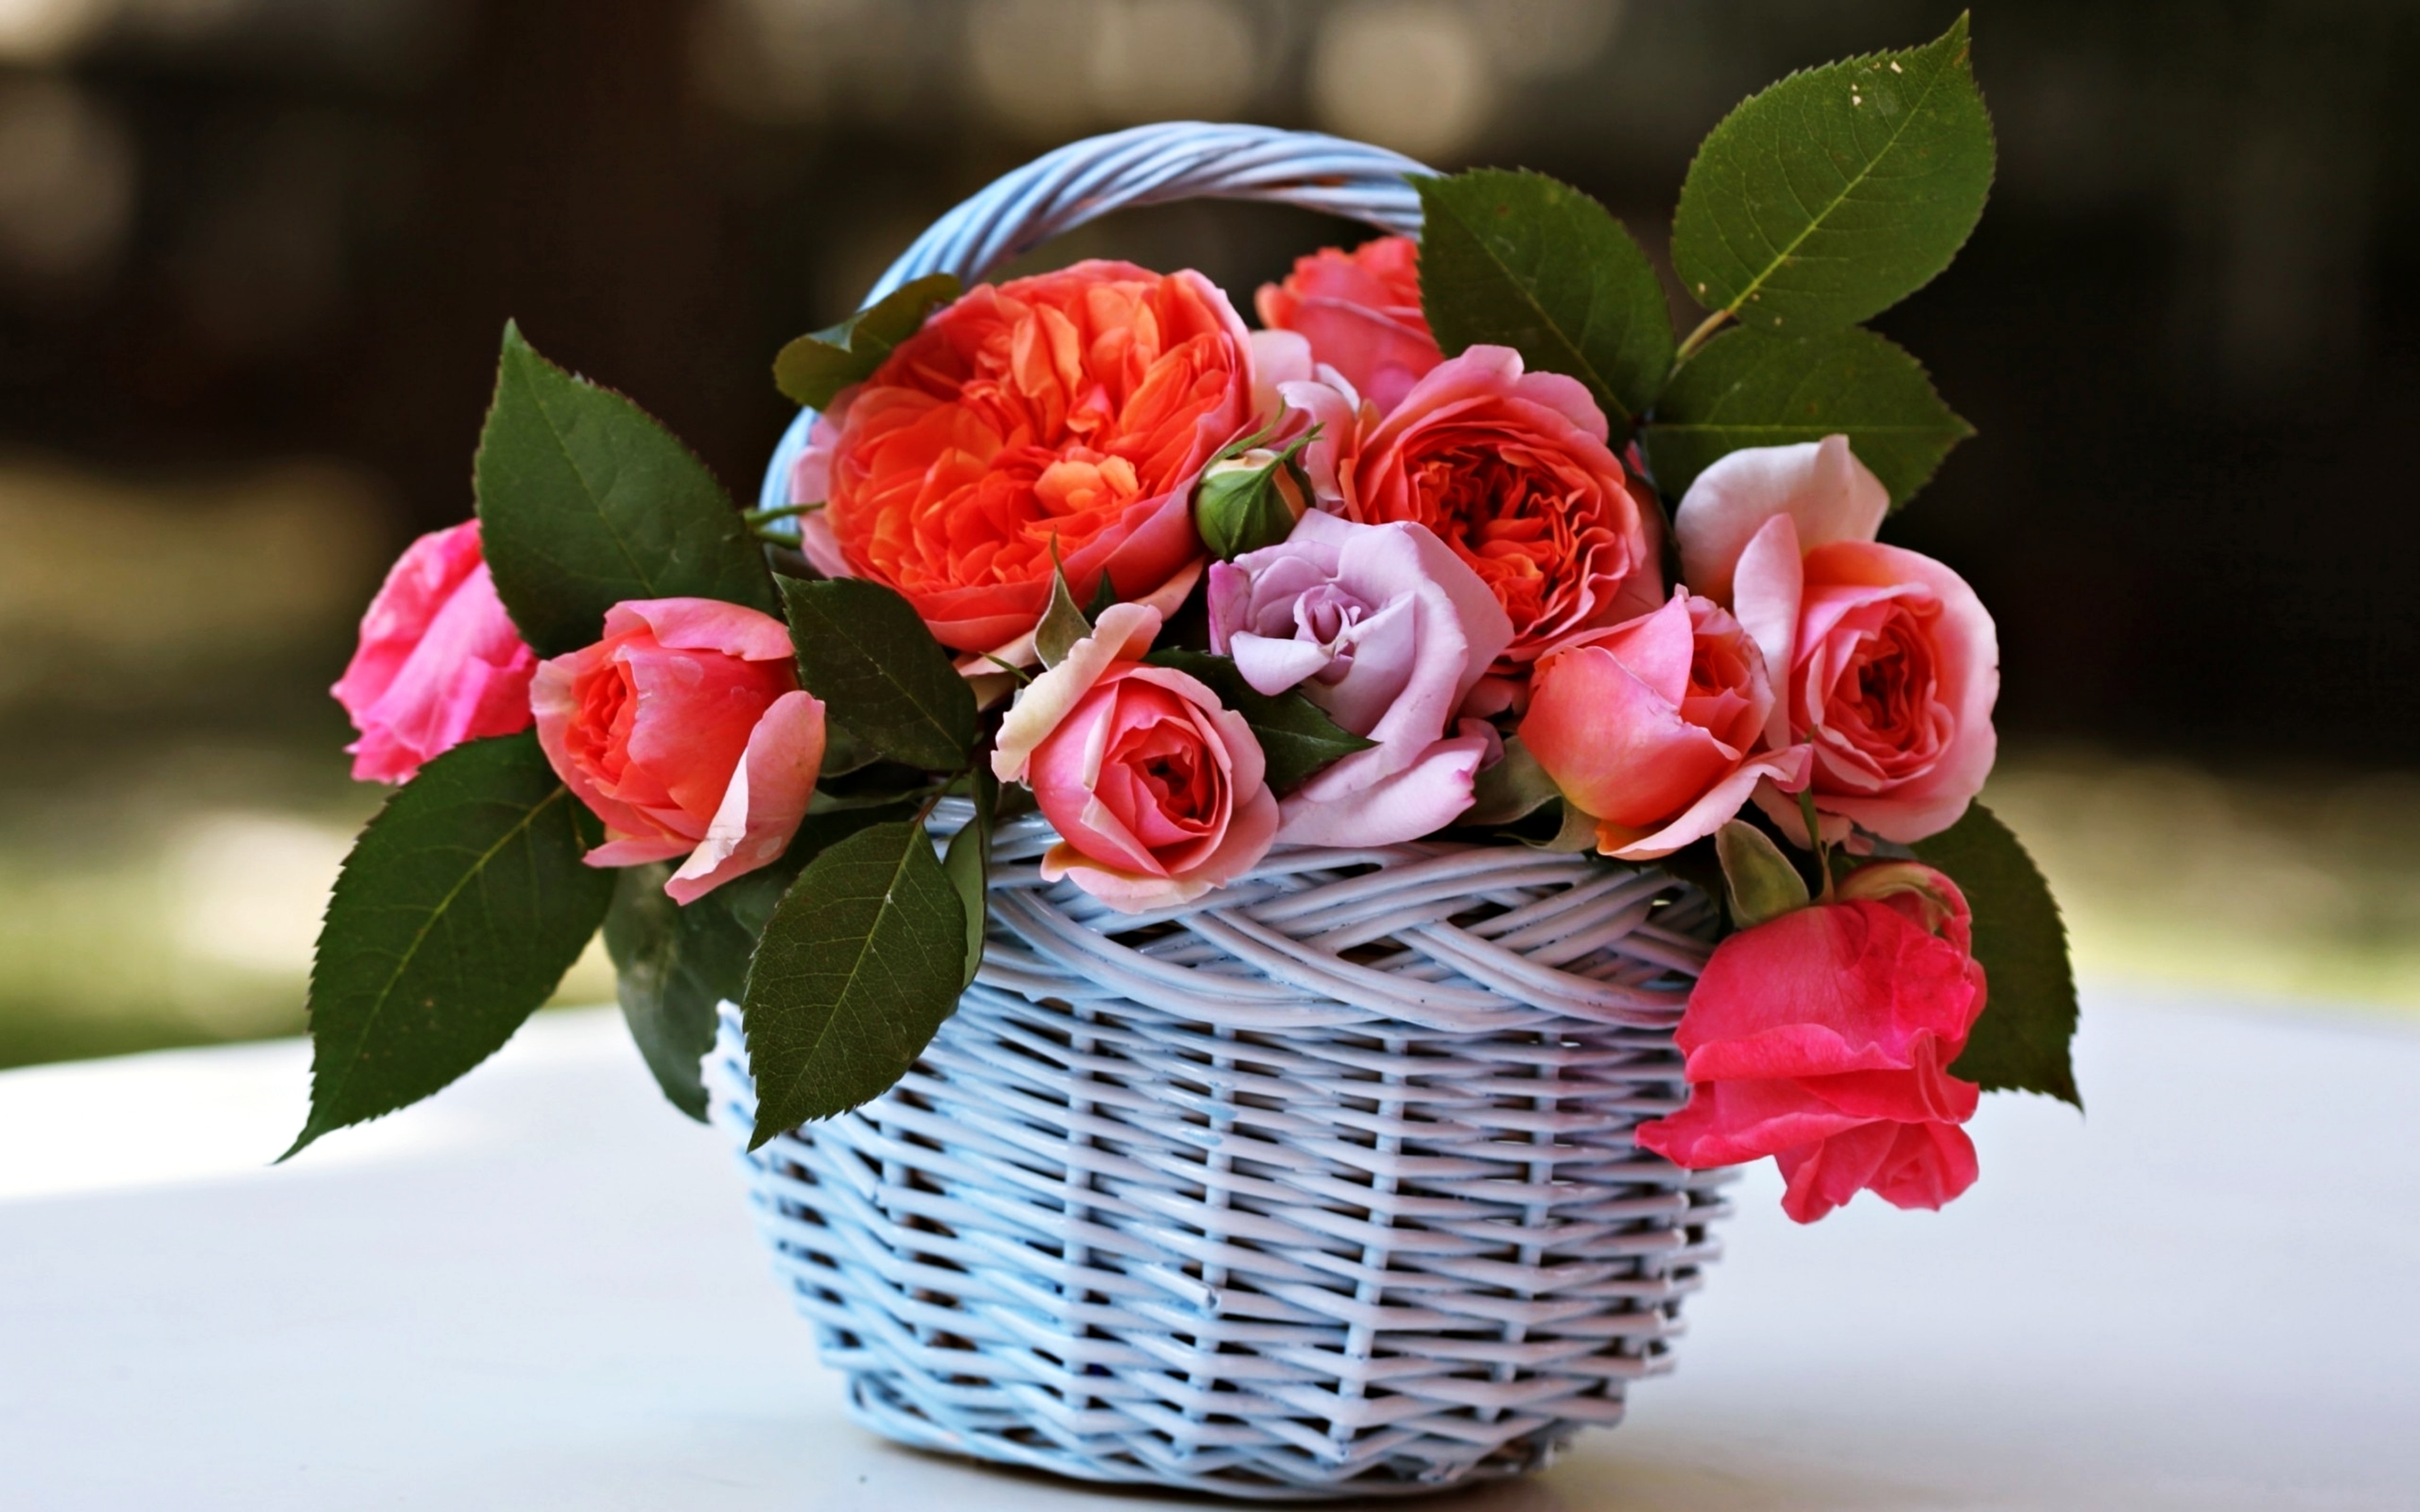 man made, flower, basket, pink flower, rose